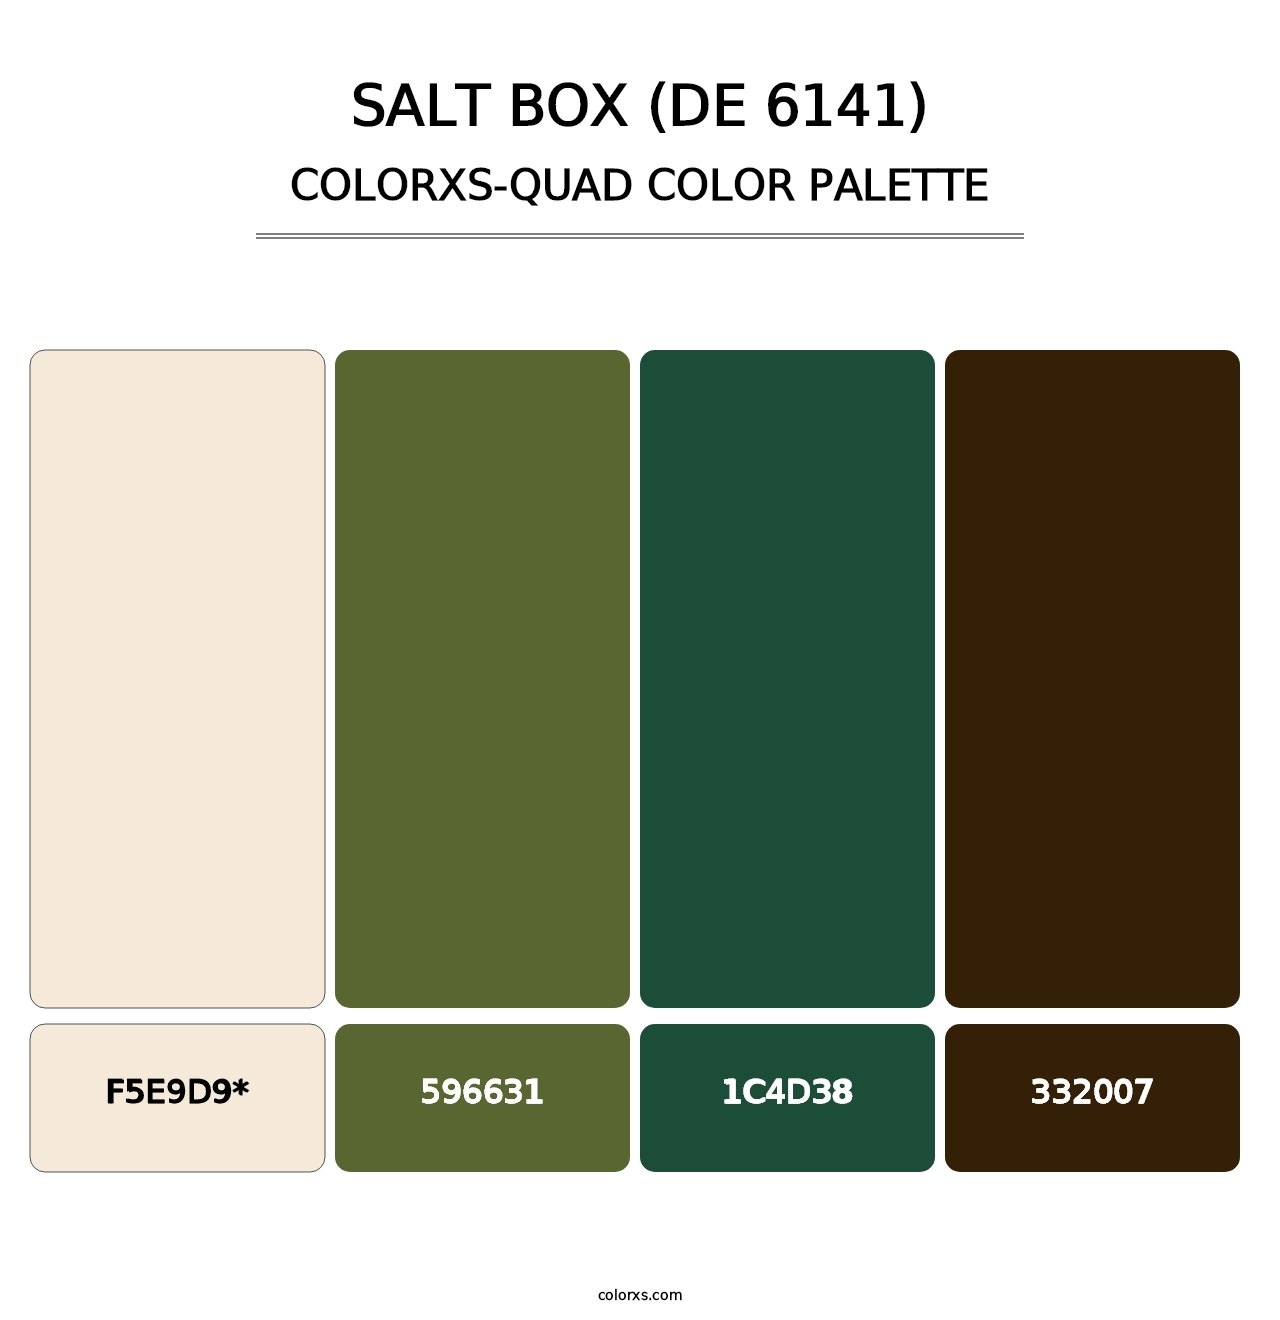 Salt Box (DE 6141) - Colorxs Quad Palette